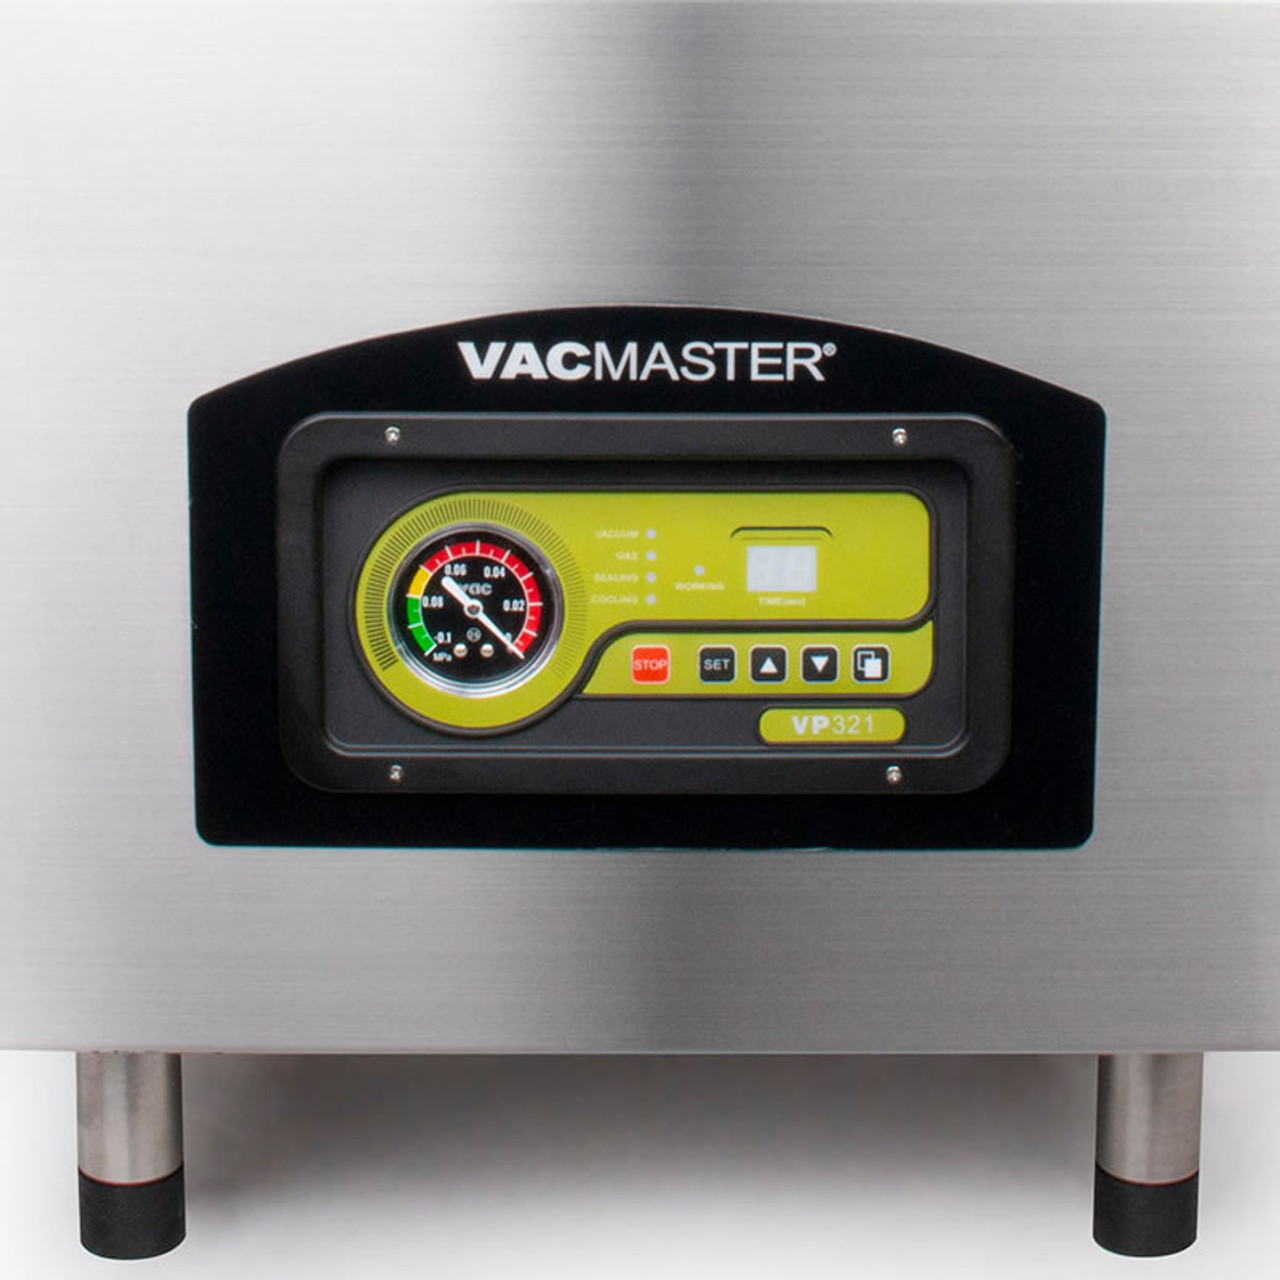 The CrankMaster Vacuum Sealer